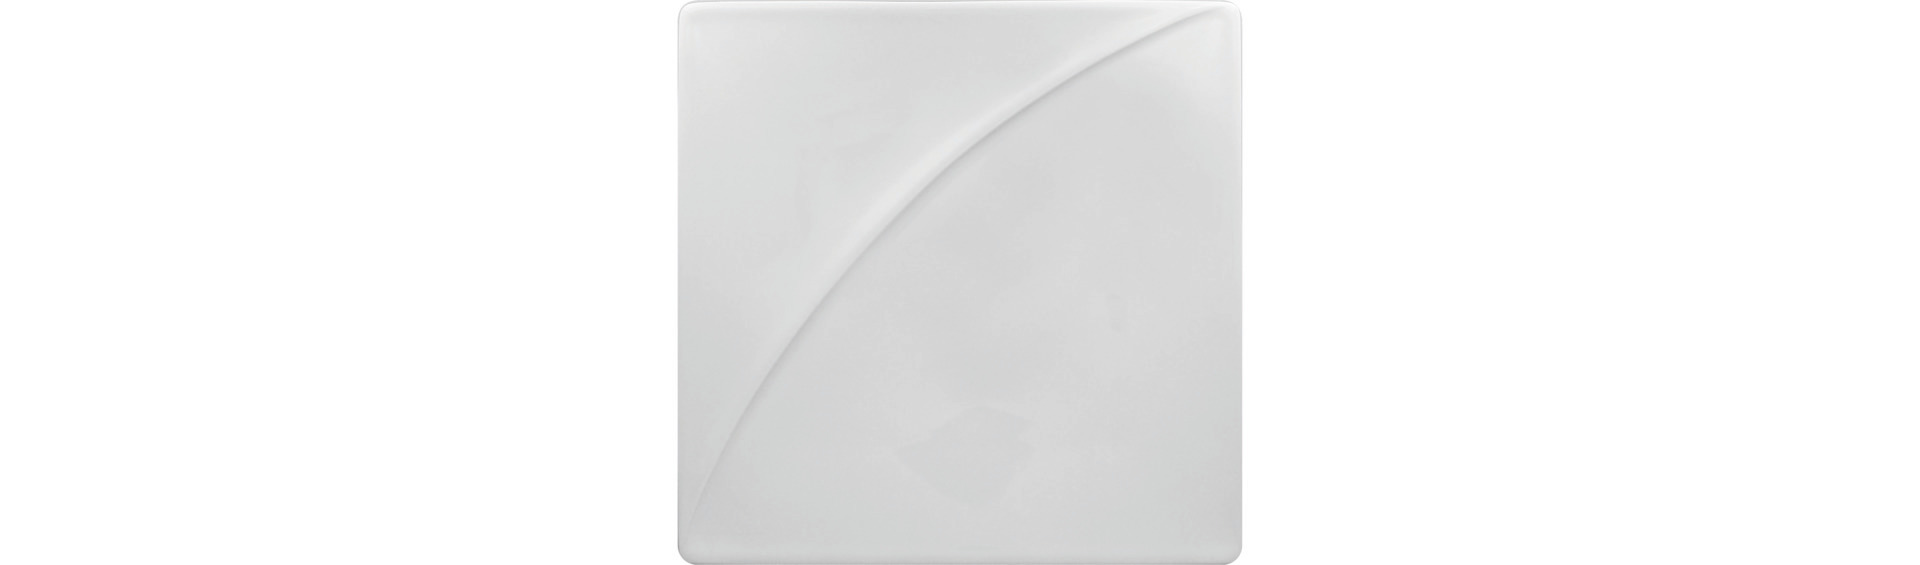 Teller quadratisch 125 x 125 mm plain- white auch als Deckel für Schale MOSB12